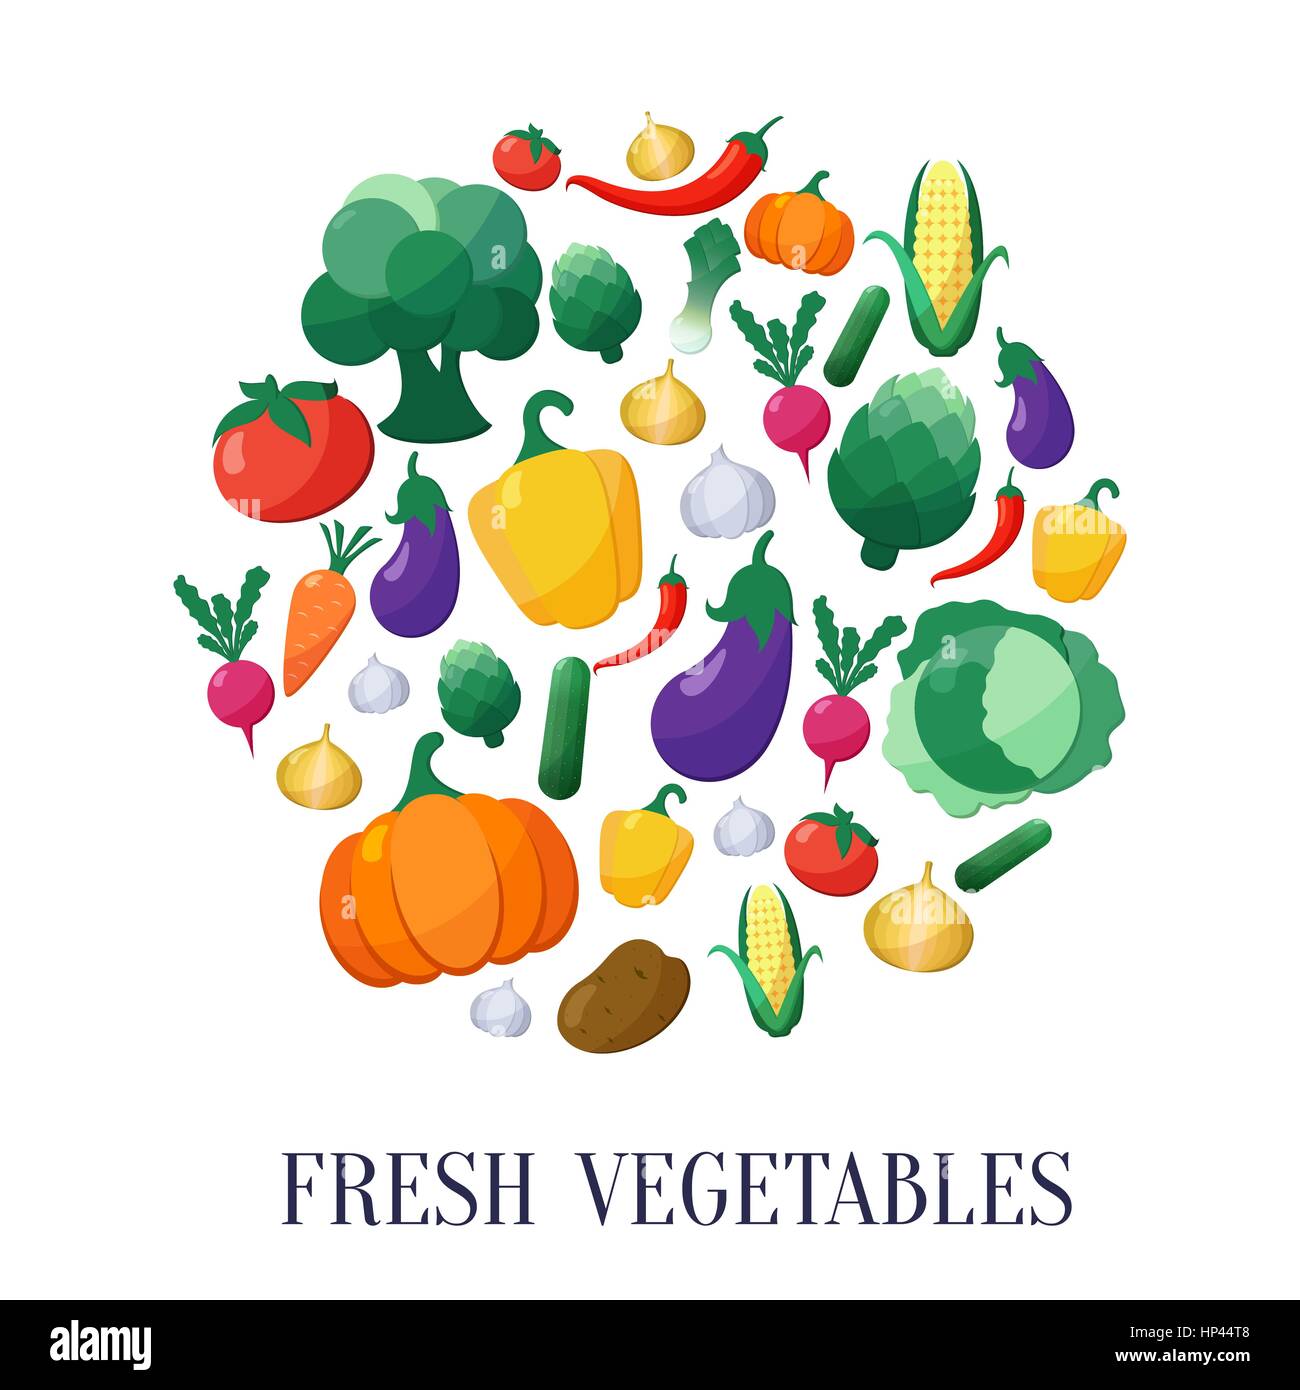 Vector Icons Set Style plat de légumes en forme de cercle à l'aubergine, la carotte, paprika, artichaut, maïs, radis, potiron, pomme de terre, poireau, poivre, l'oignon, Illustration de Vecteur